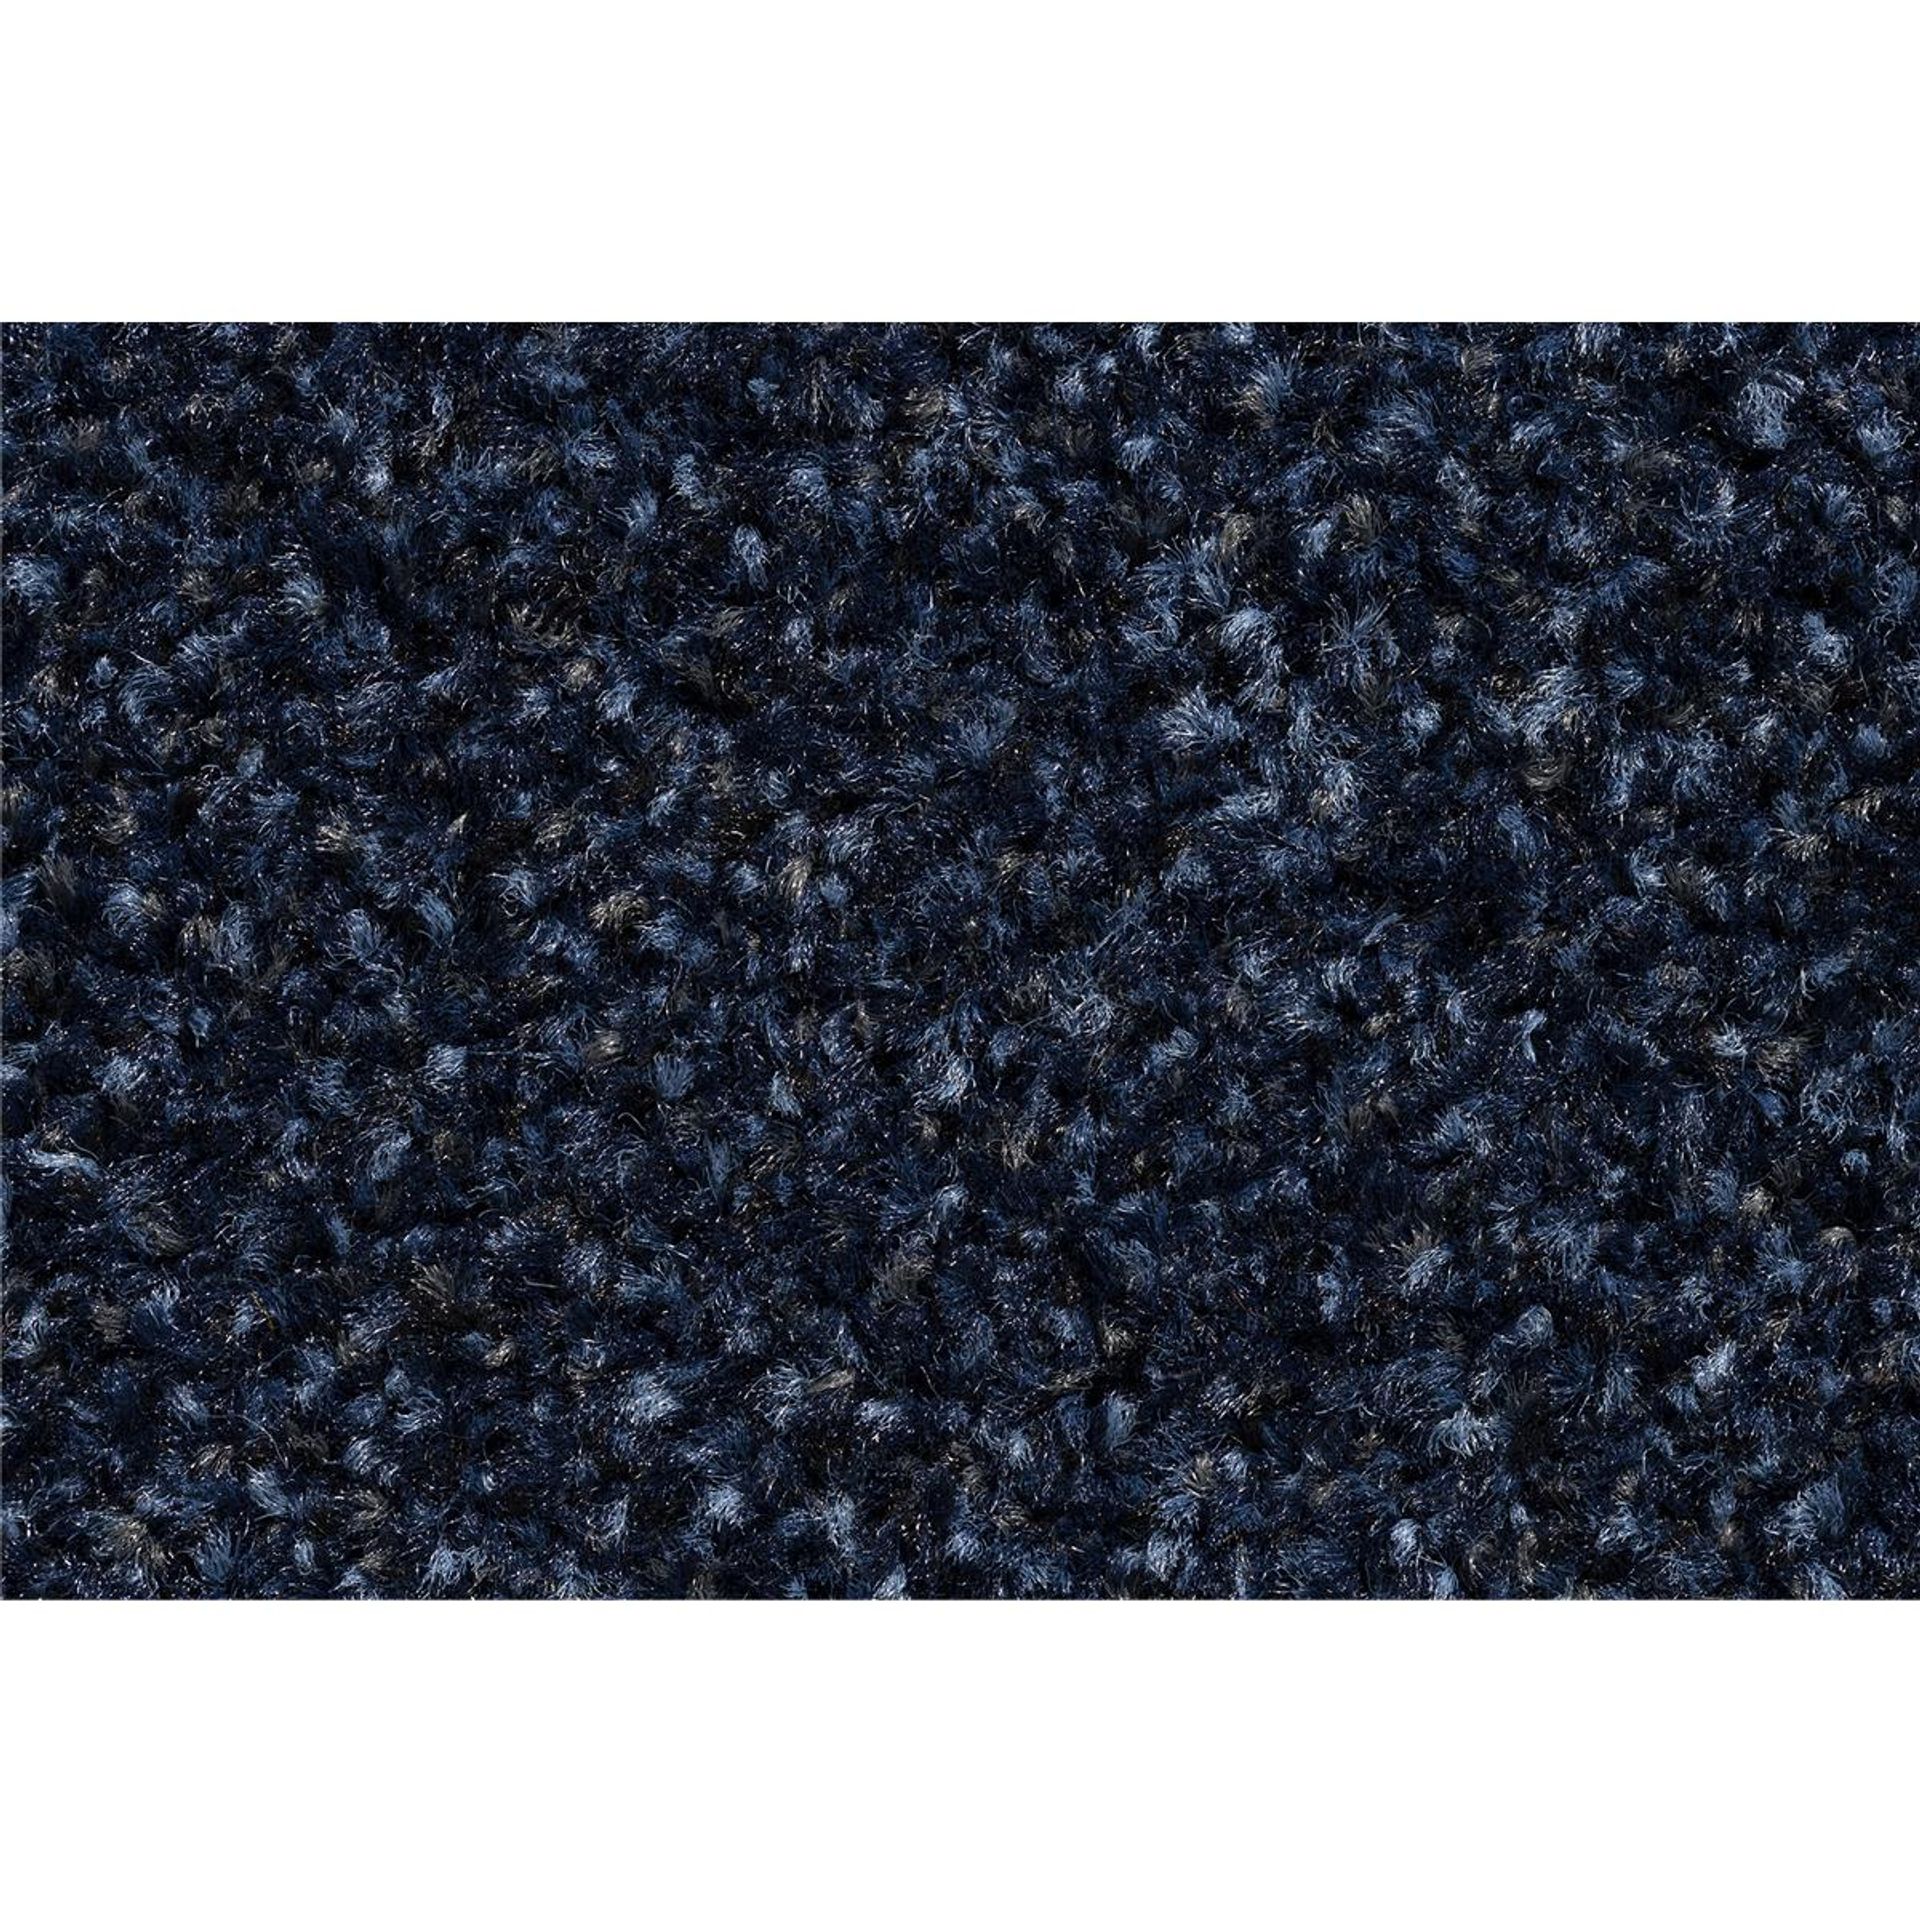 Sauberlauf Innen Portal 011 cobalt blue - Rollenbreite 130 cm